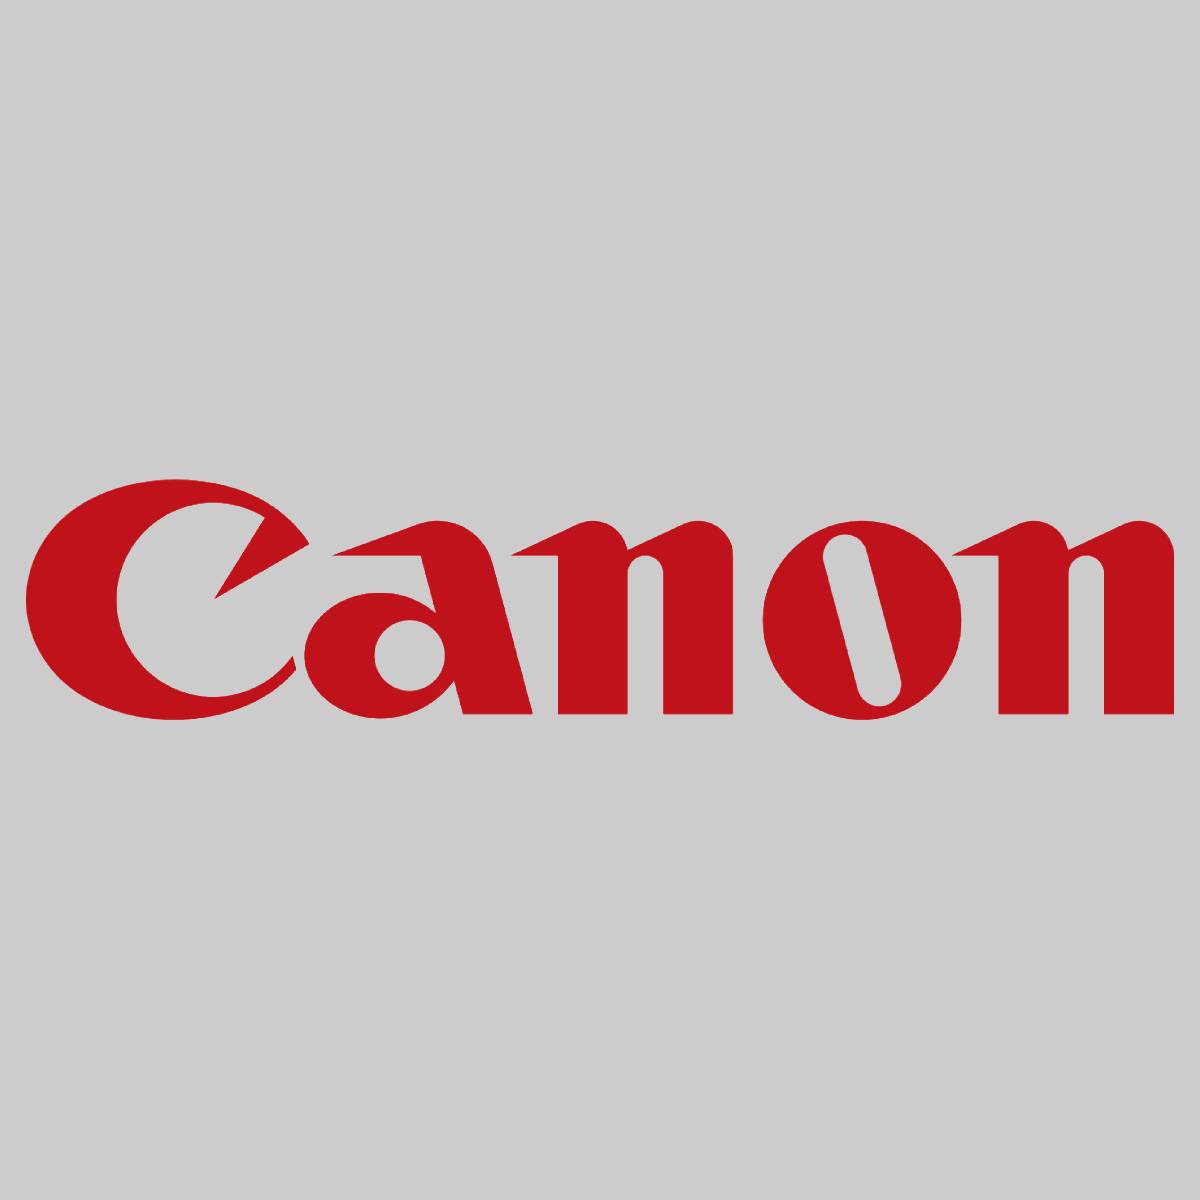 "Original Canon Fuser Unit FM2-9987-00R000 für ImageRunner C2380 C3580 NEU